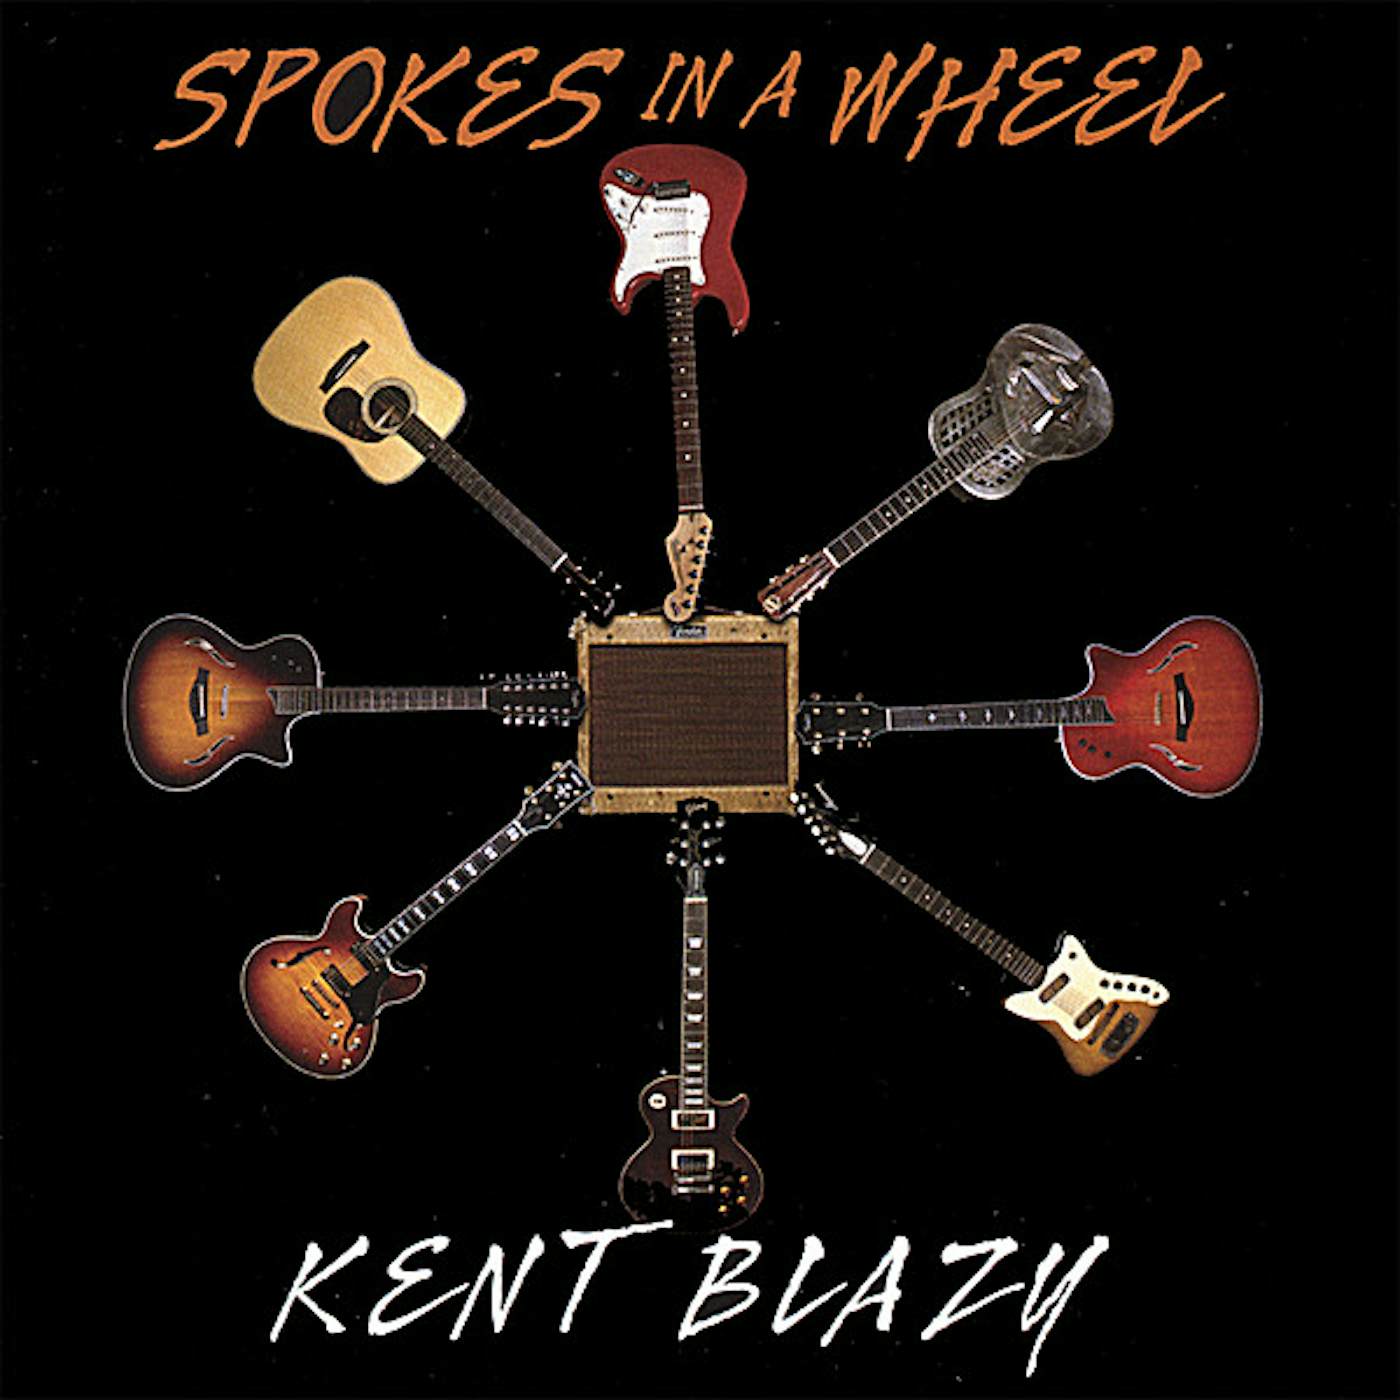 Kent Blazy SPOKES IN A WHEEL CD